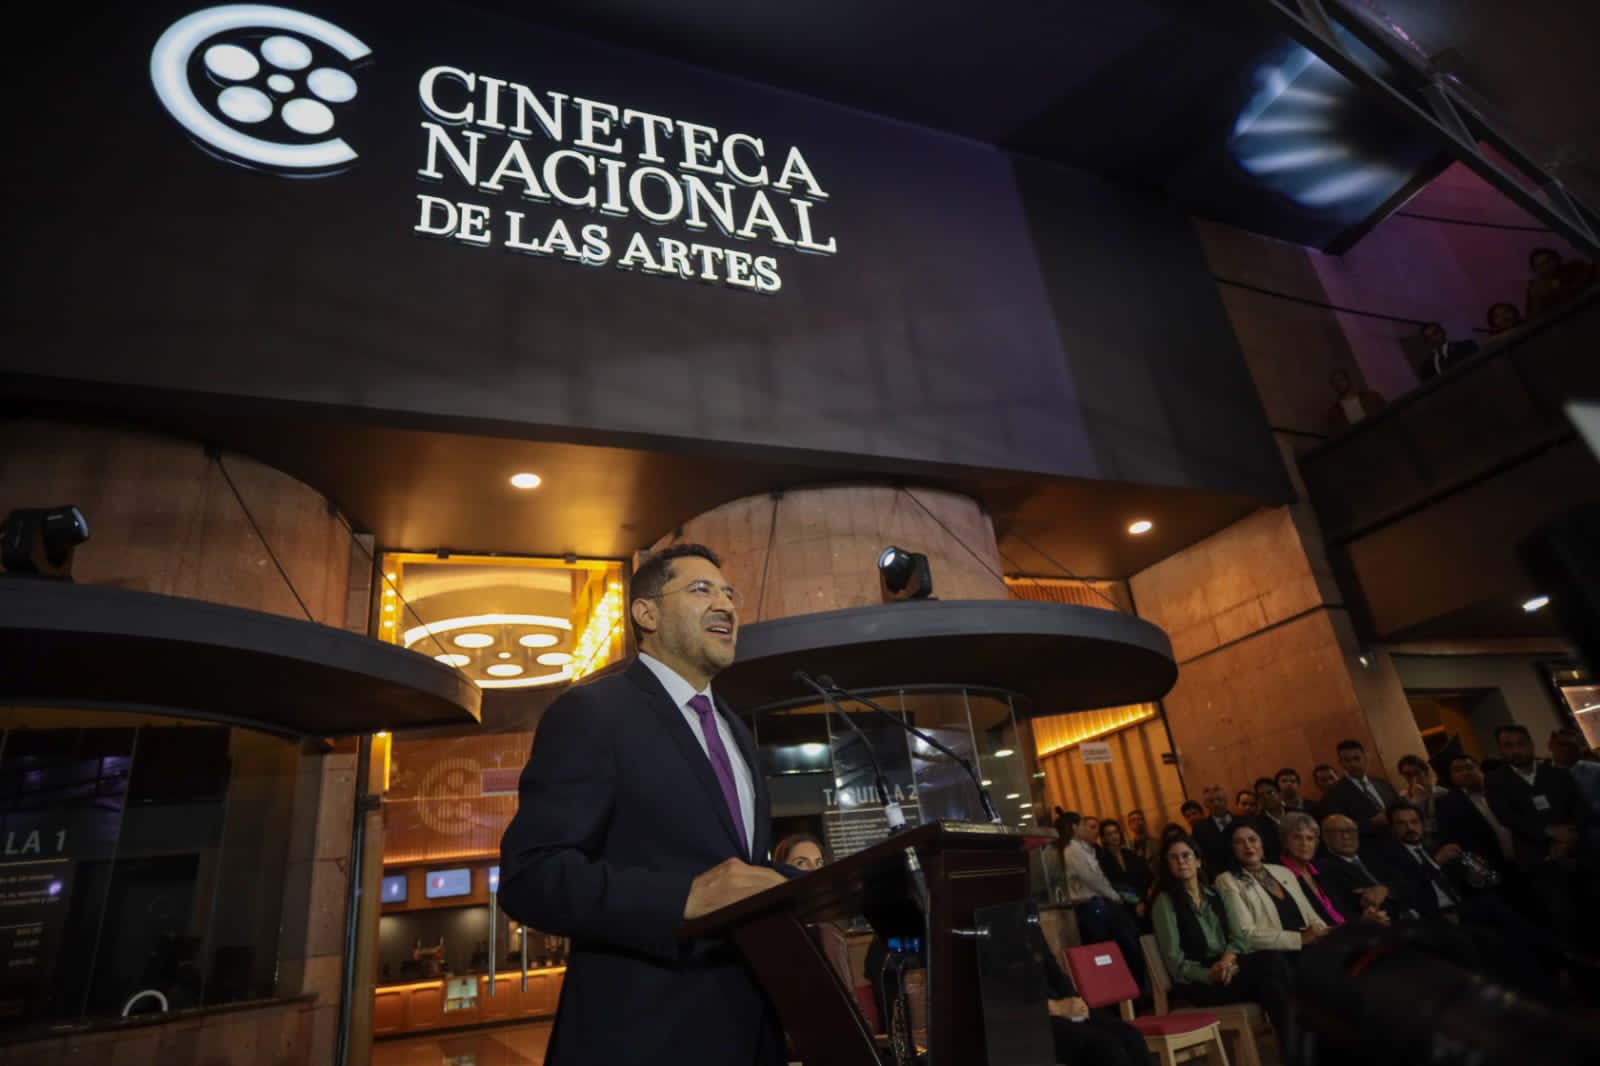 “El cine es arte, recreación y conciencia social”, afirma Martí Batres durante inauguración de la Cineteca Nacional de las Artes